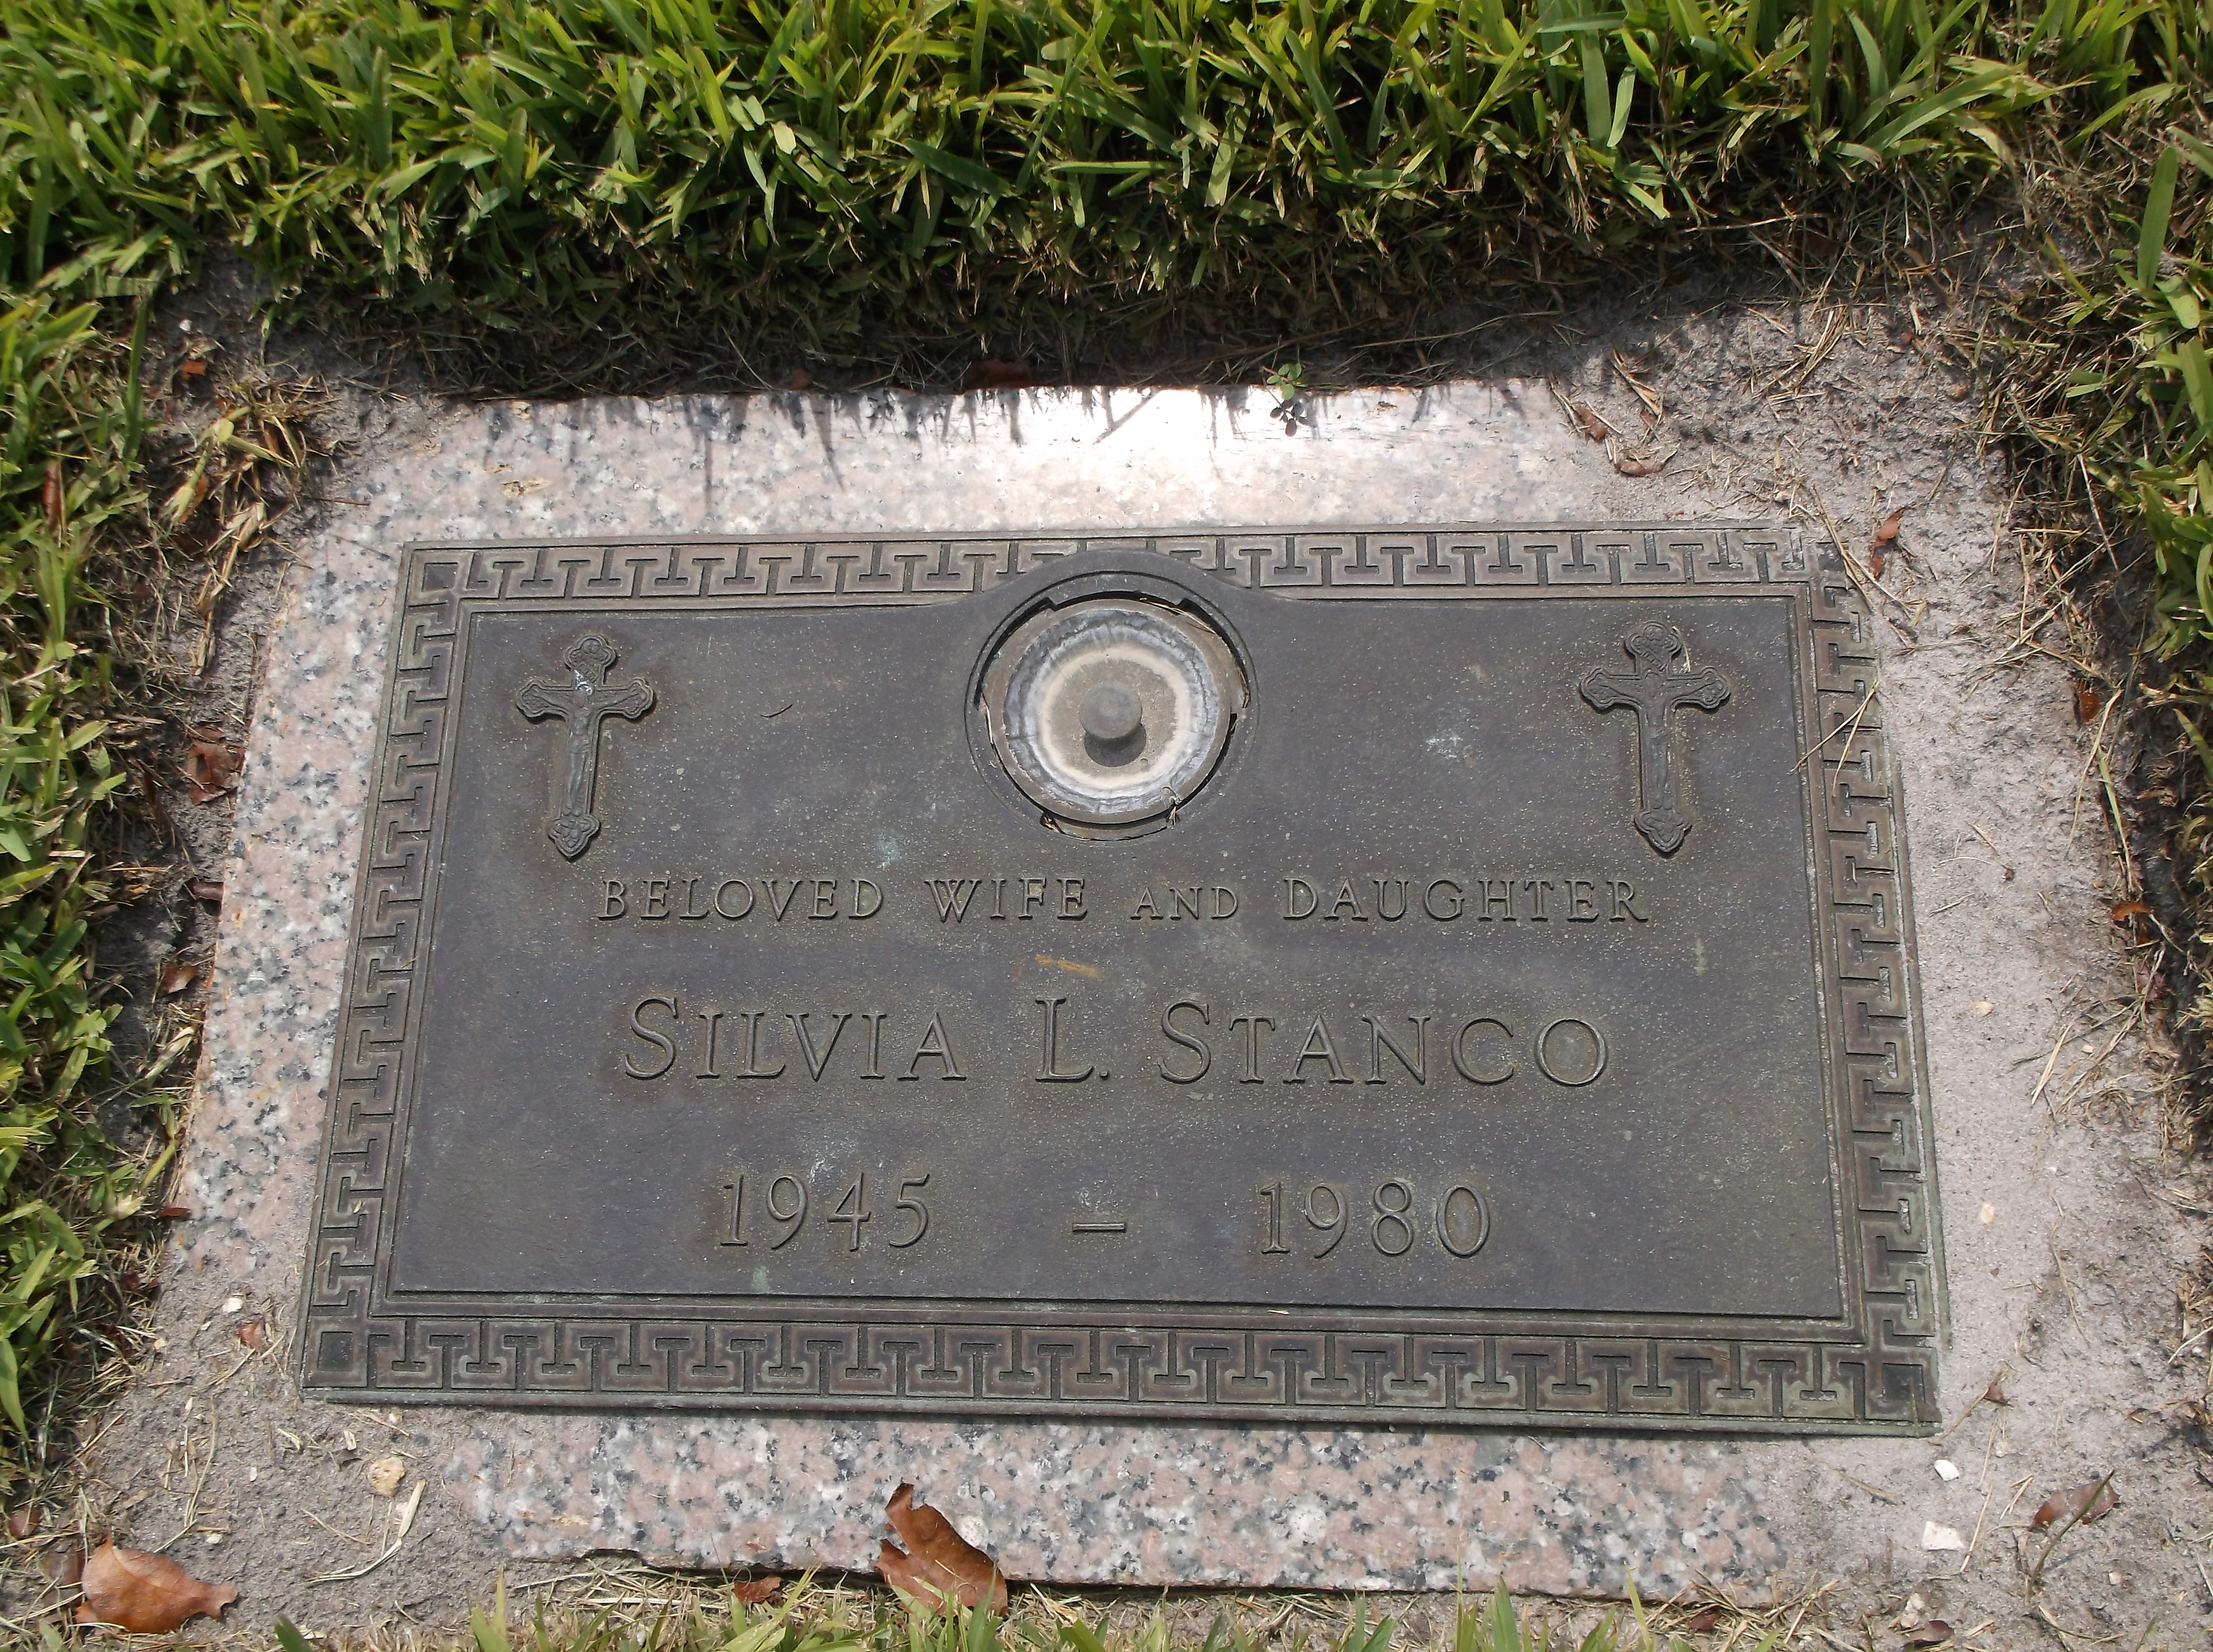 Silvia L Stanco